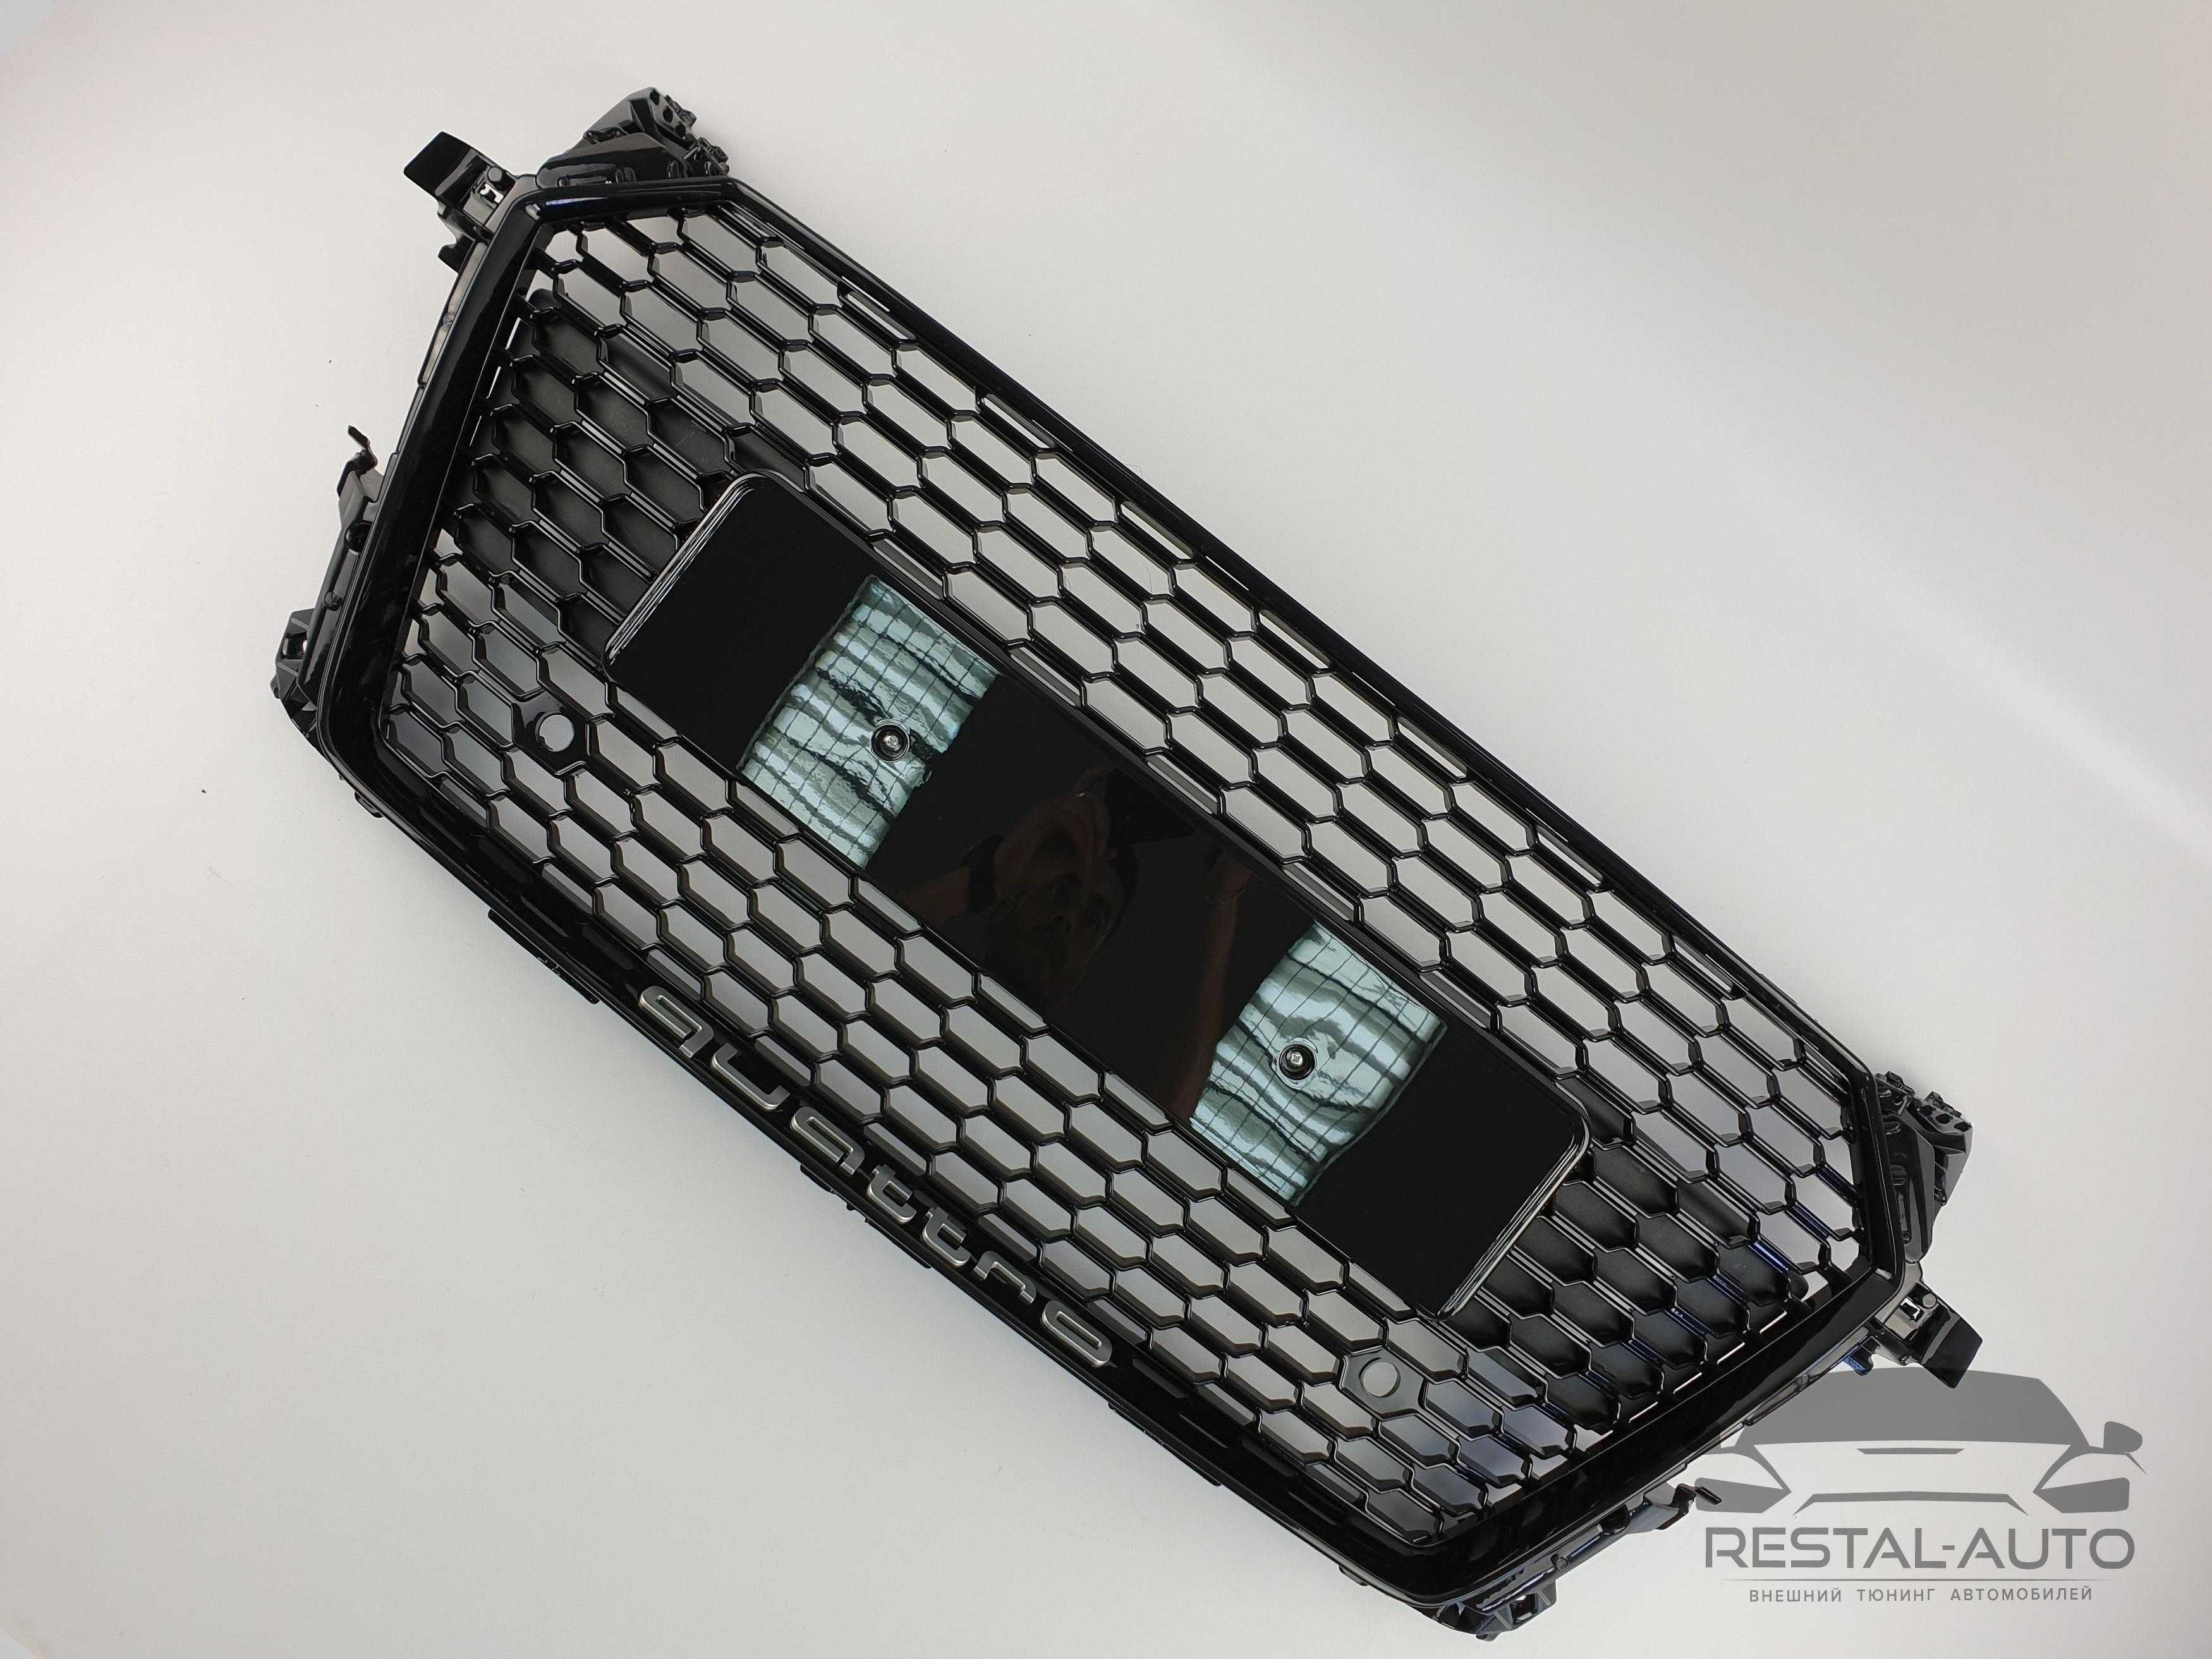 Решетка радиатора на Audi TT 14-18г решотки ауди тт RS с лайн решітка